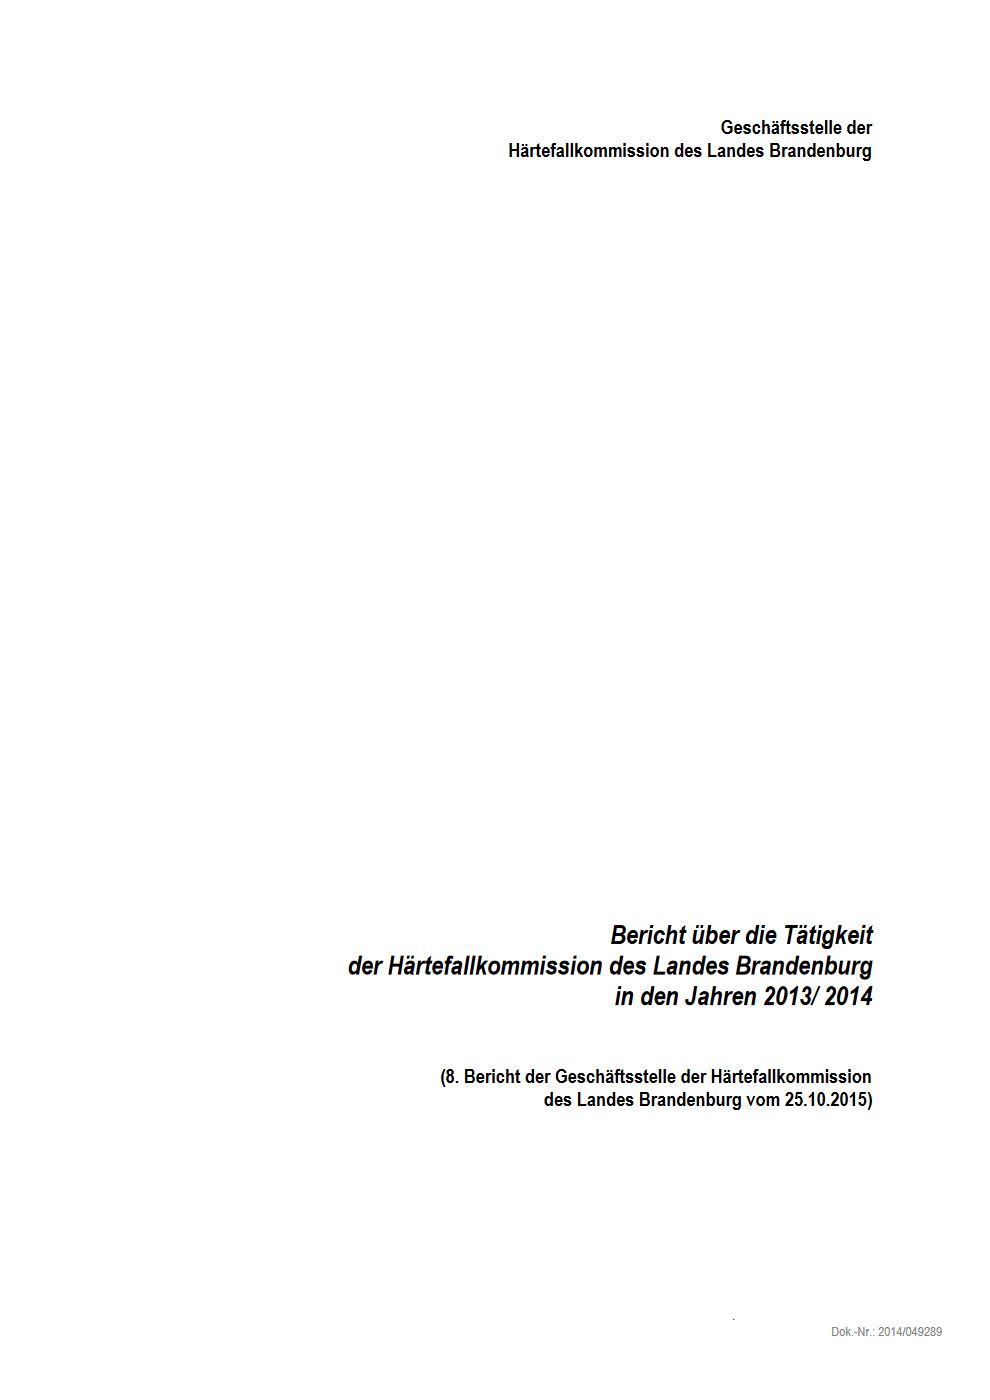 Bild vergrößern (Bild: Vorschau Tätigkeitsbericht Härtefallkommission 2013/2014)